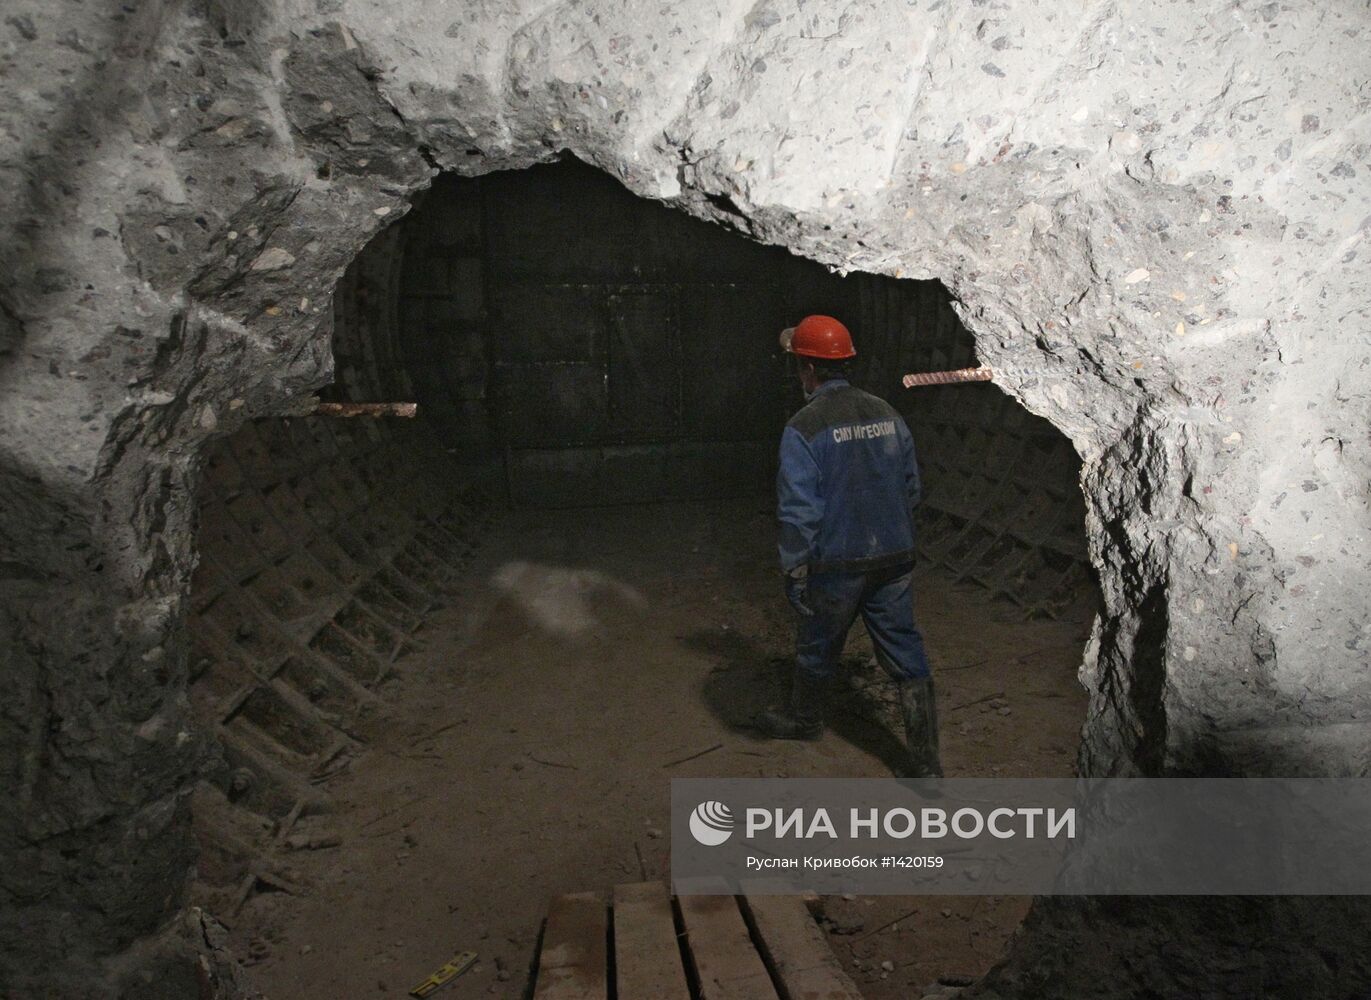 Сбойка тоннелей Калининско-Солнцевской и Арбатско-Покровской лин